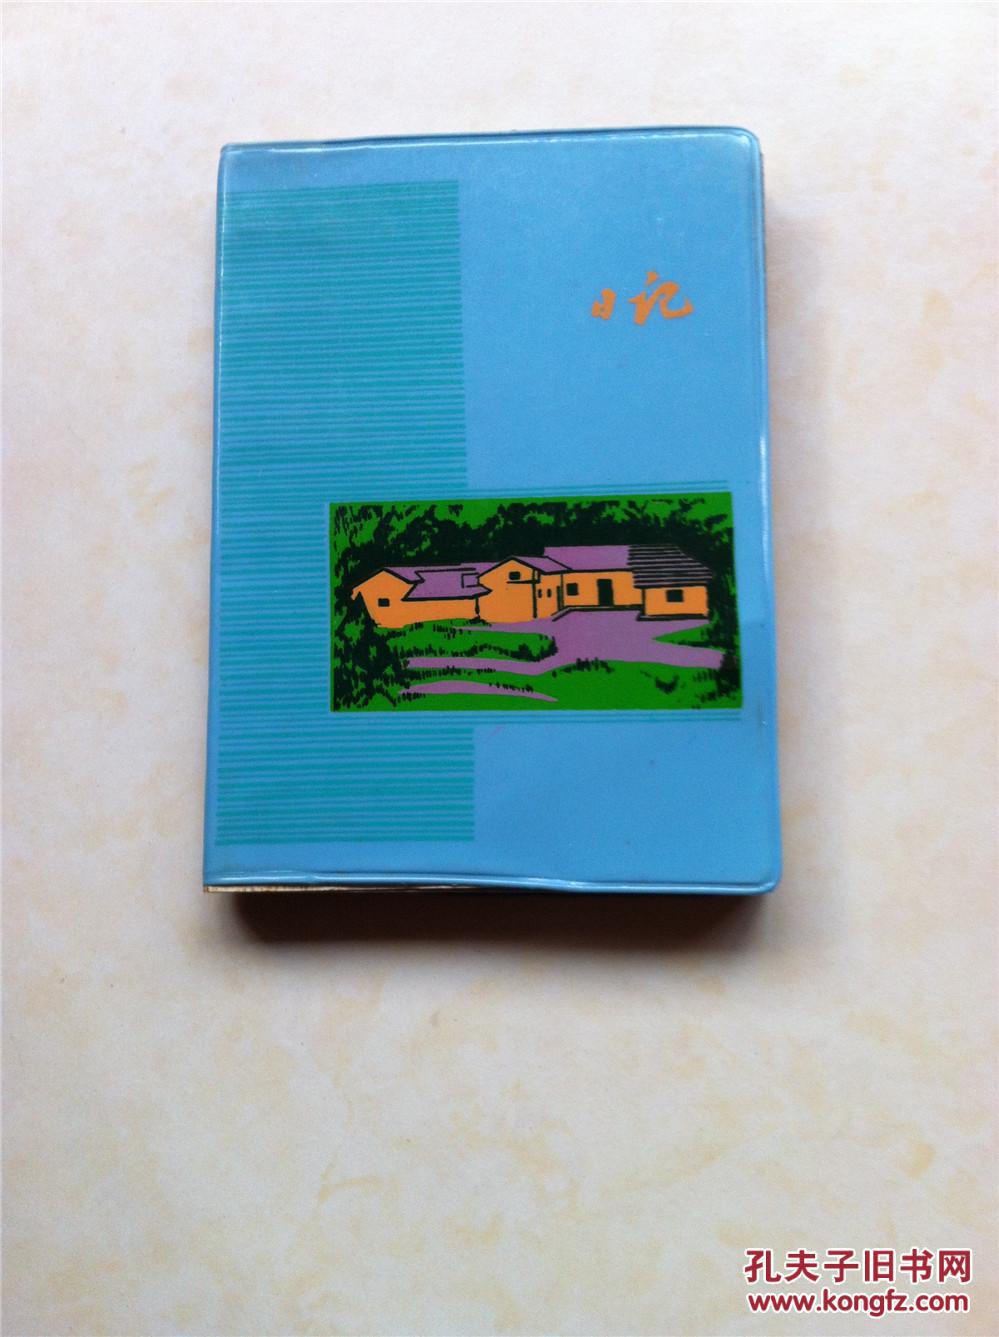 毛主席故居韶山冲 1976年印塑料日记本和韶山冲手册 一函2本